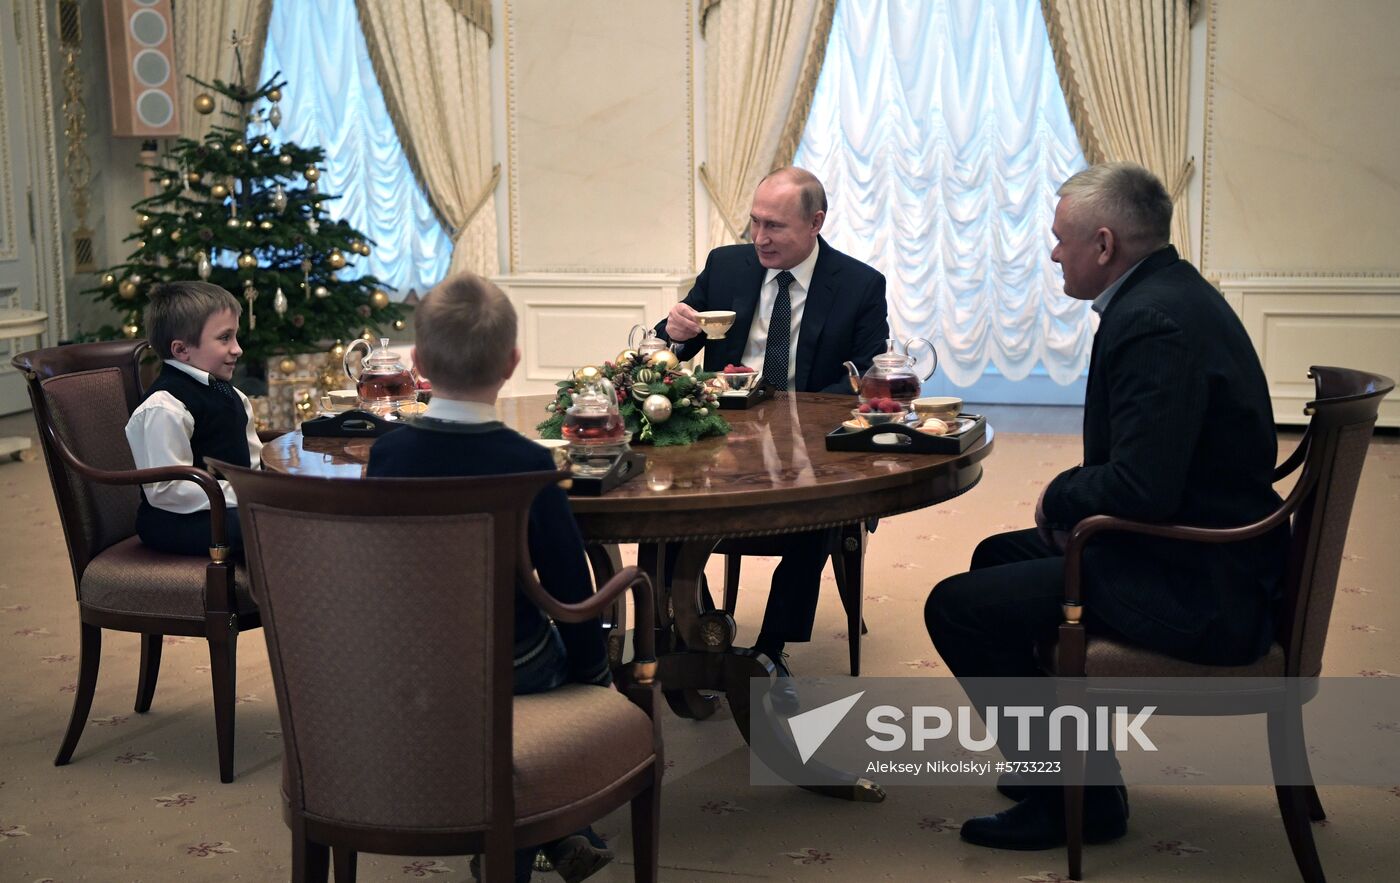 President Putin's visit to St. Petersburg